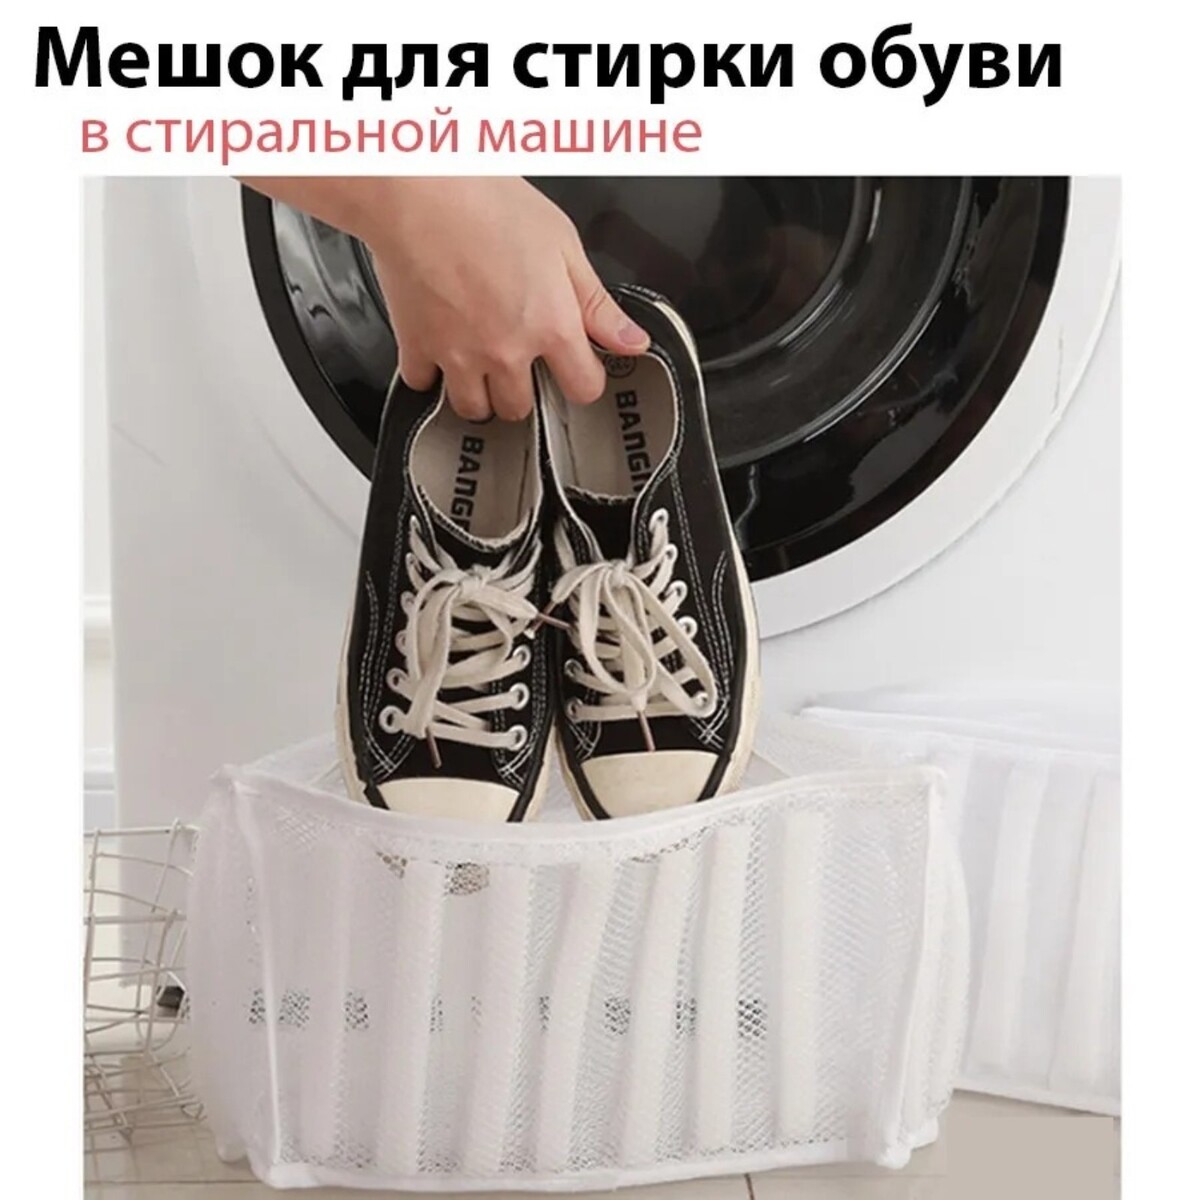 Мешок для стирки обуви доляна, 33×19×18 см, для обуви до 42 размера мешок для стирки белья доляна 30×40 см крупная сетка белый